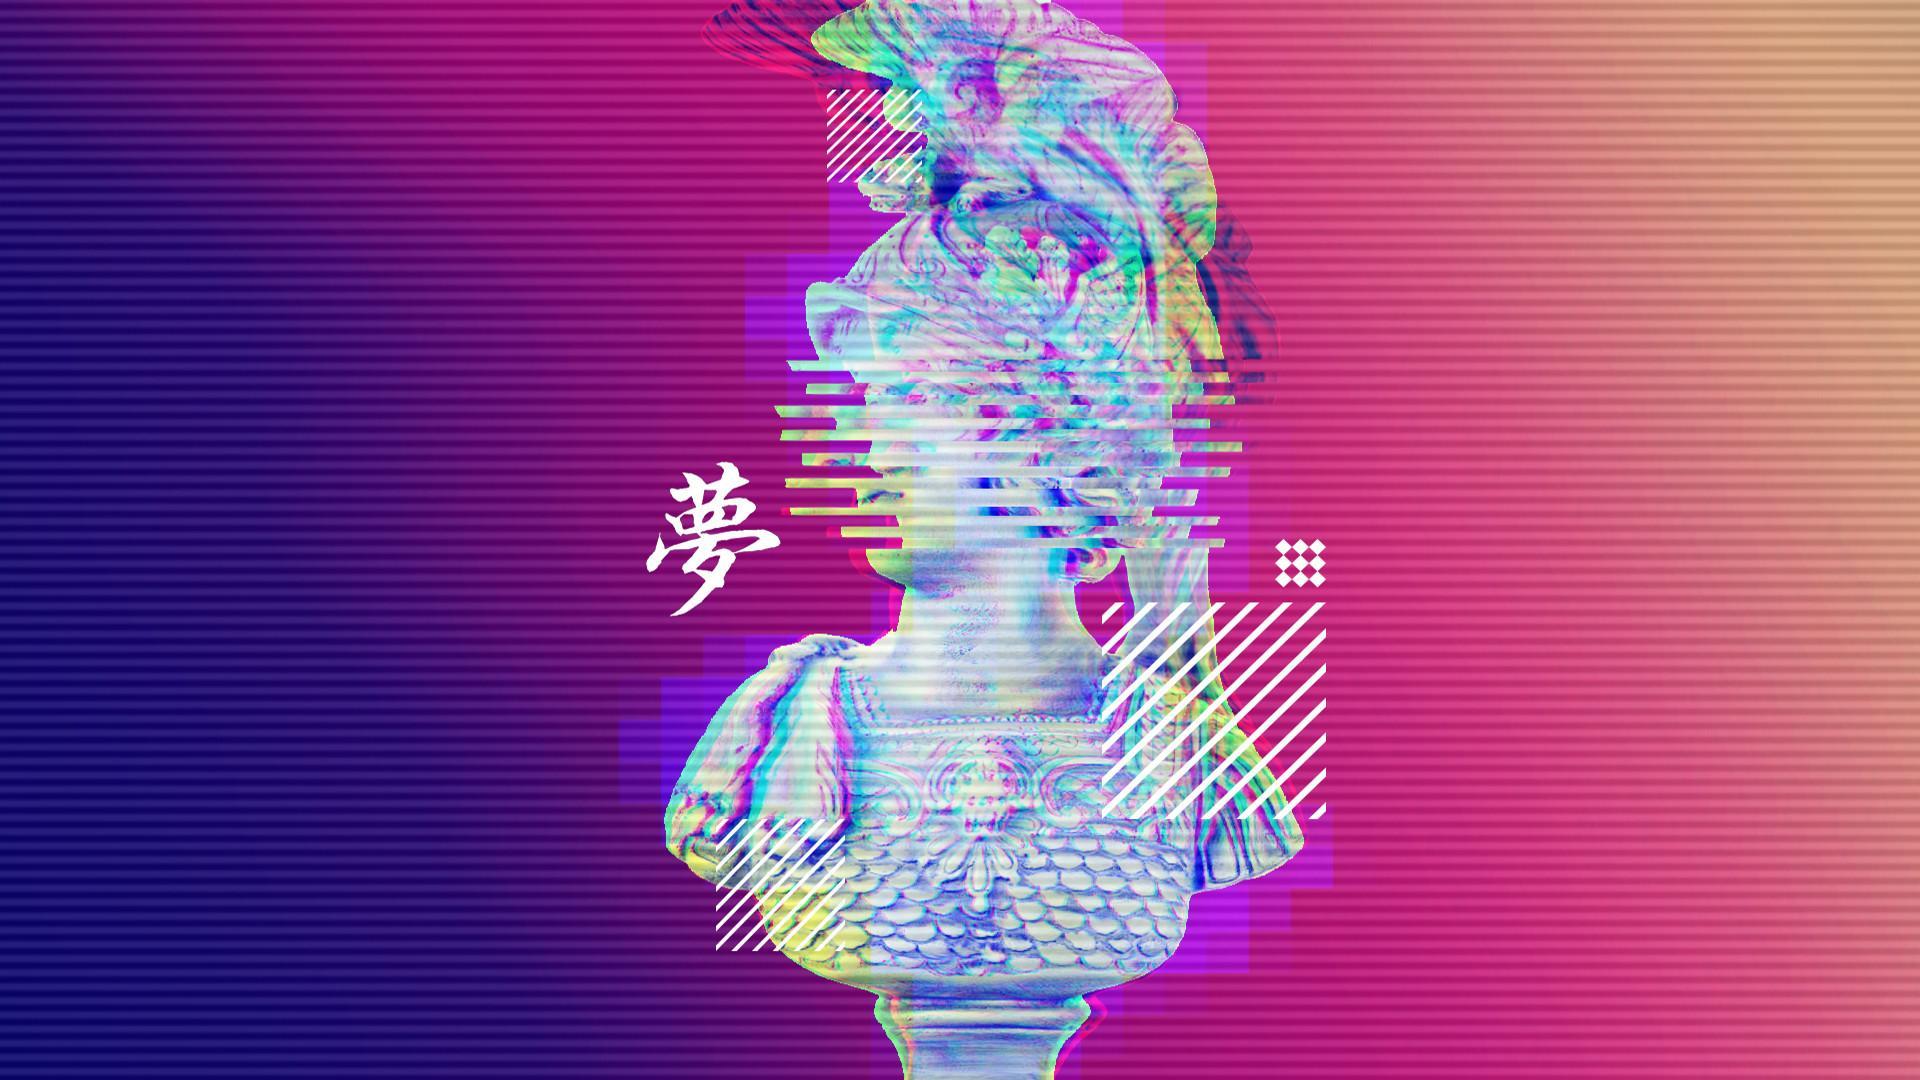 pastel vaporwave background